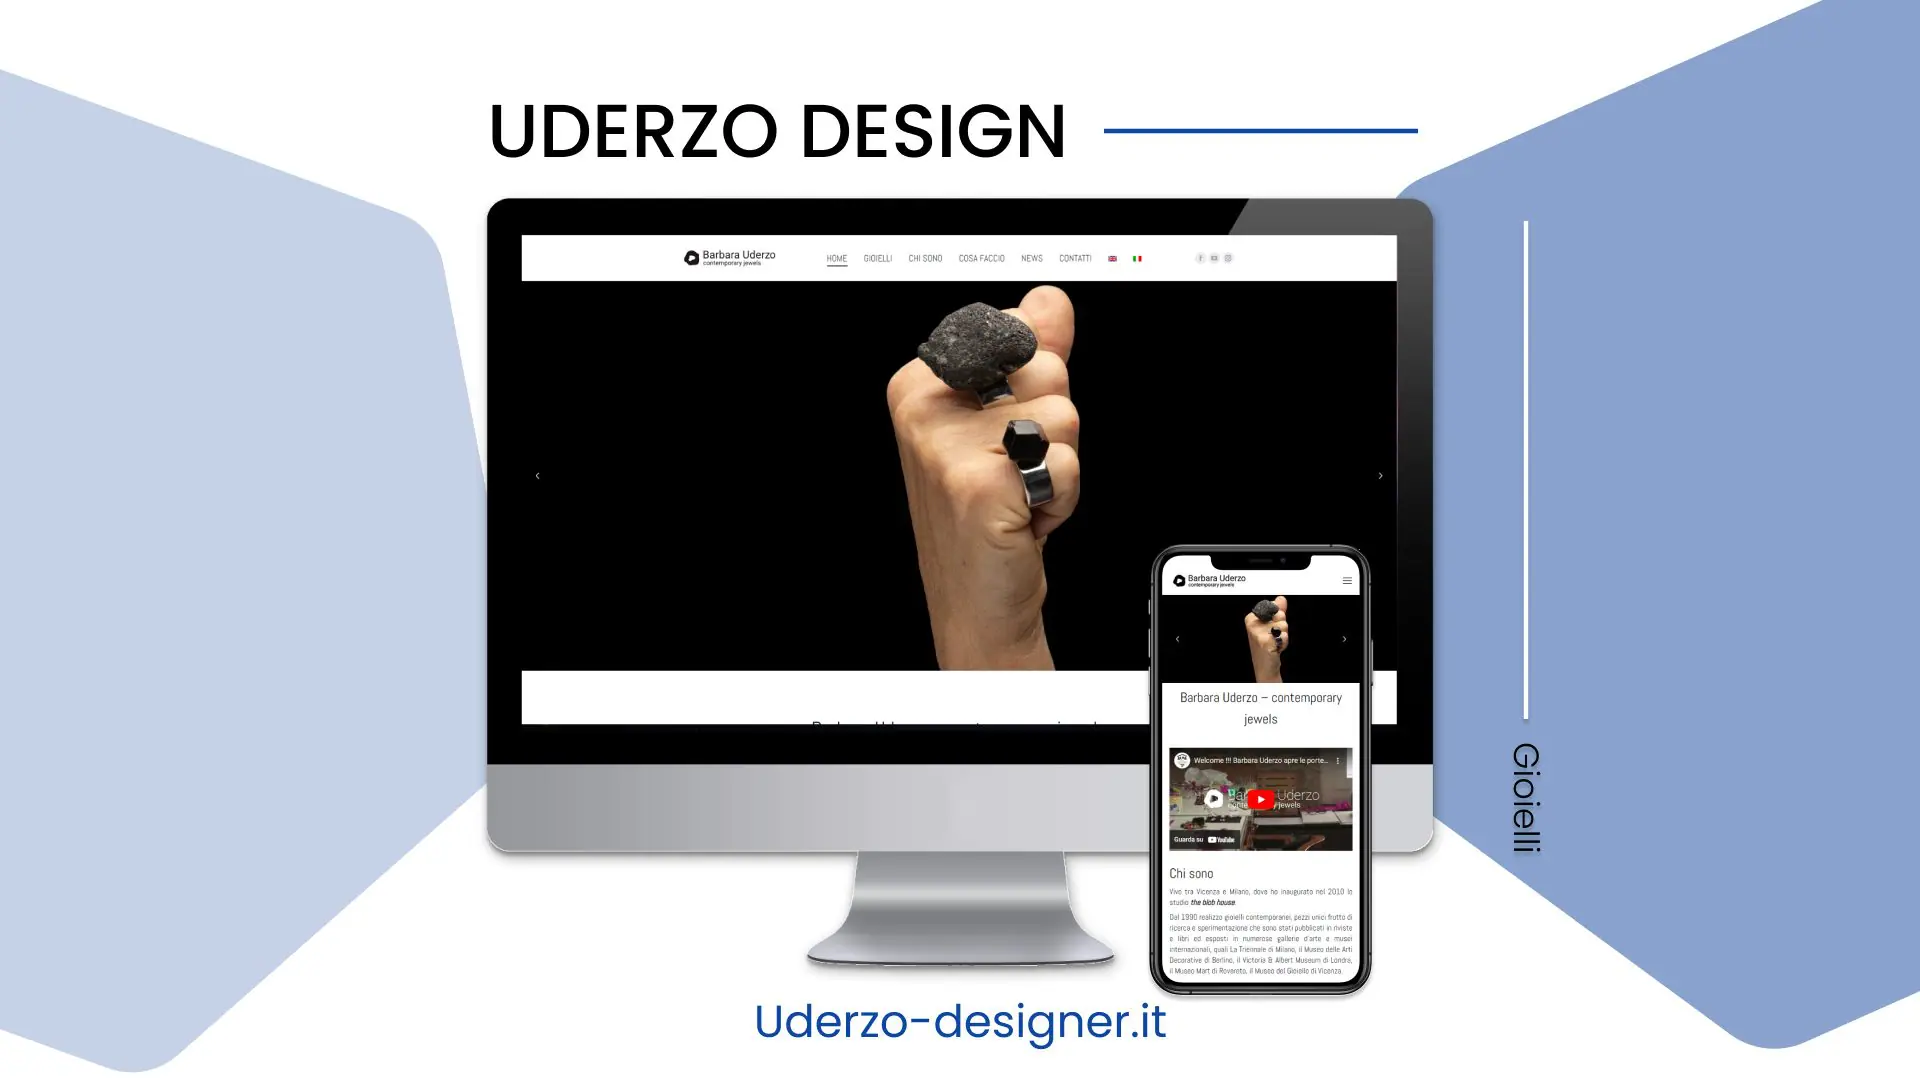 Uderzo Design